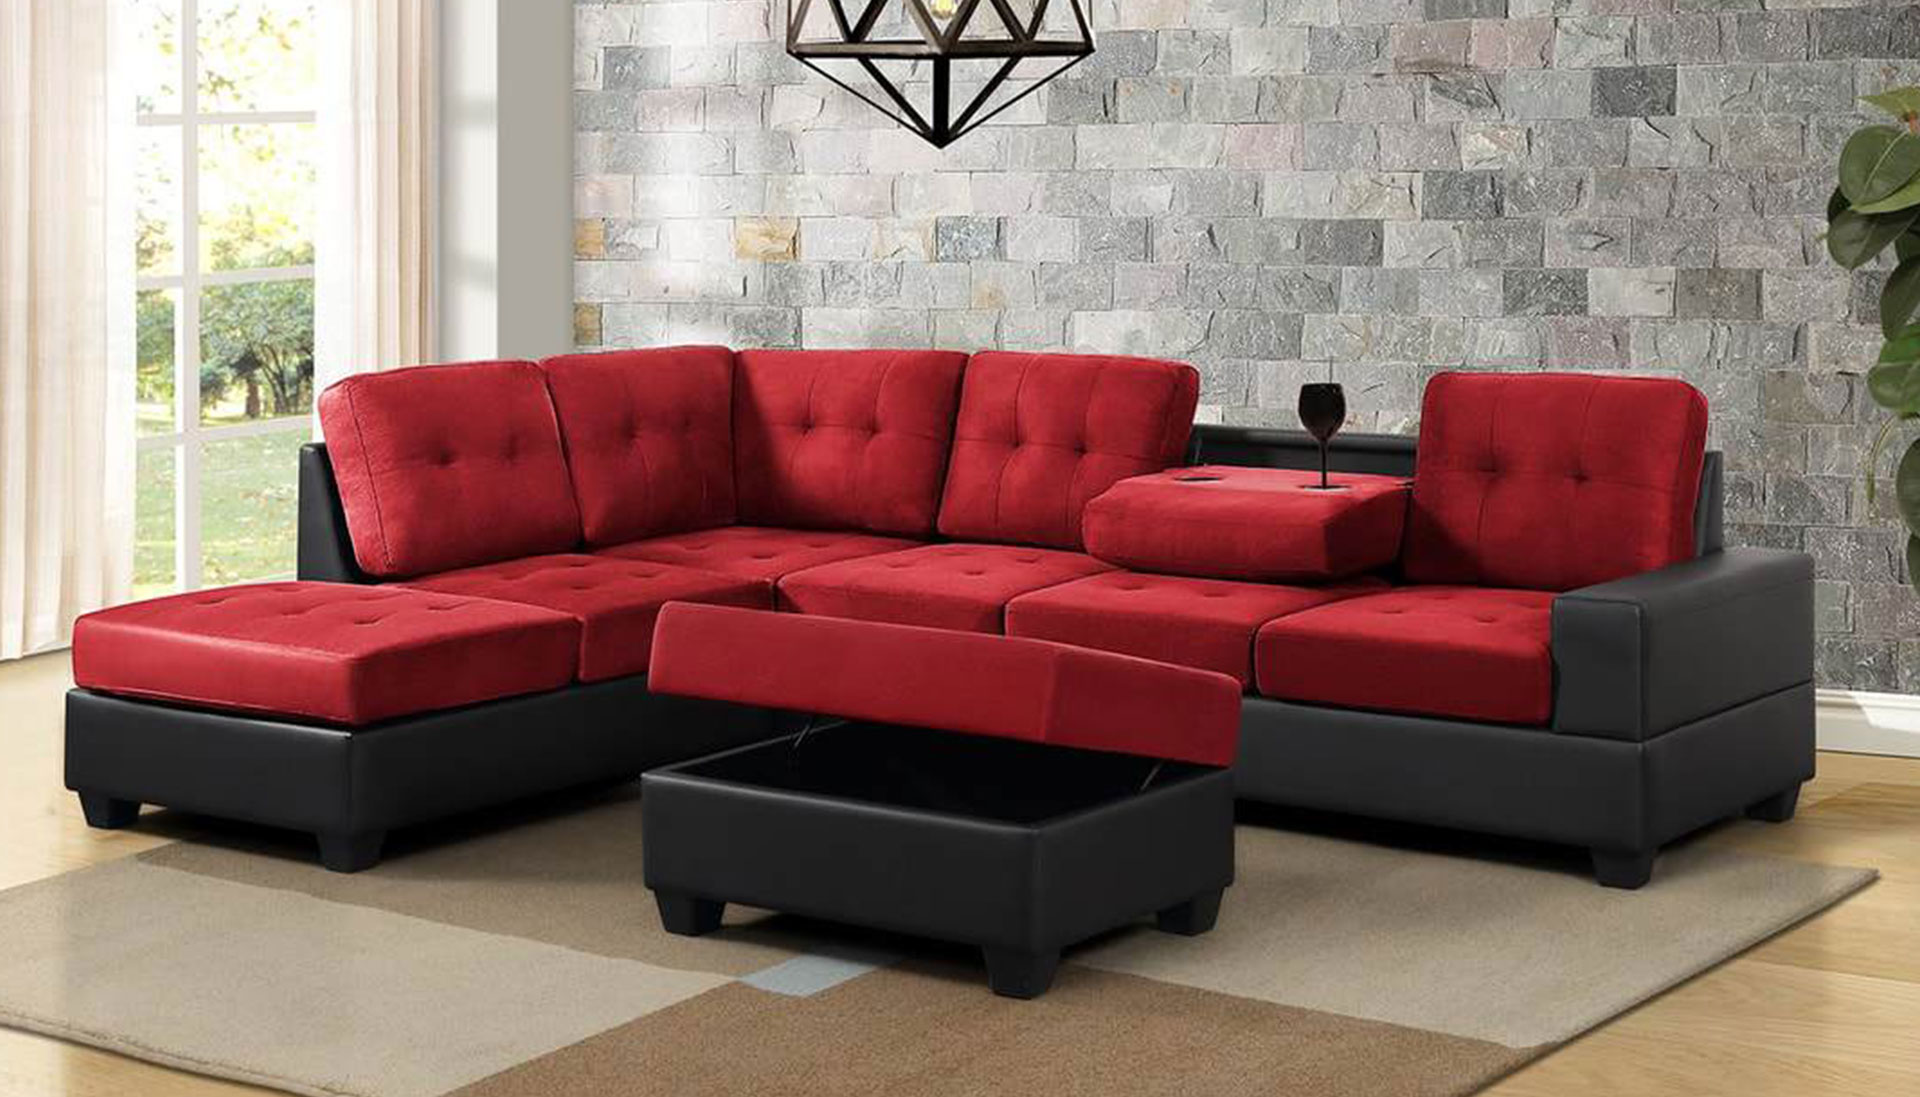 Ghế sofa phòng khách hiện đại cho gia đình GHC-762